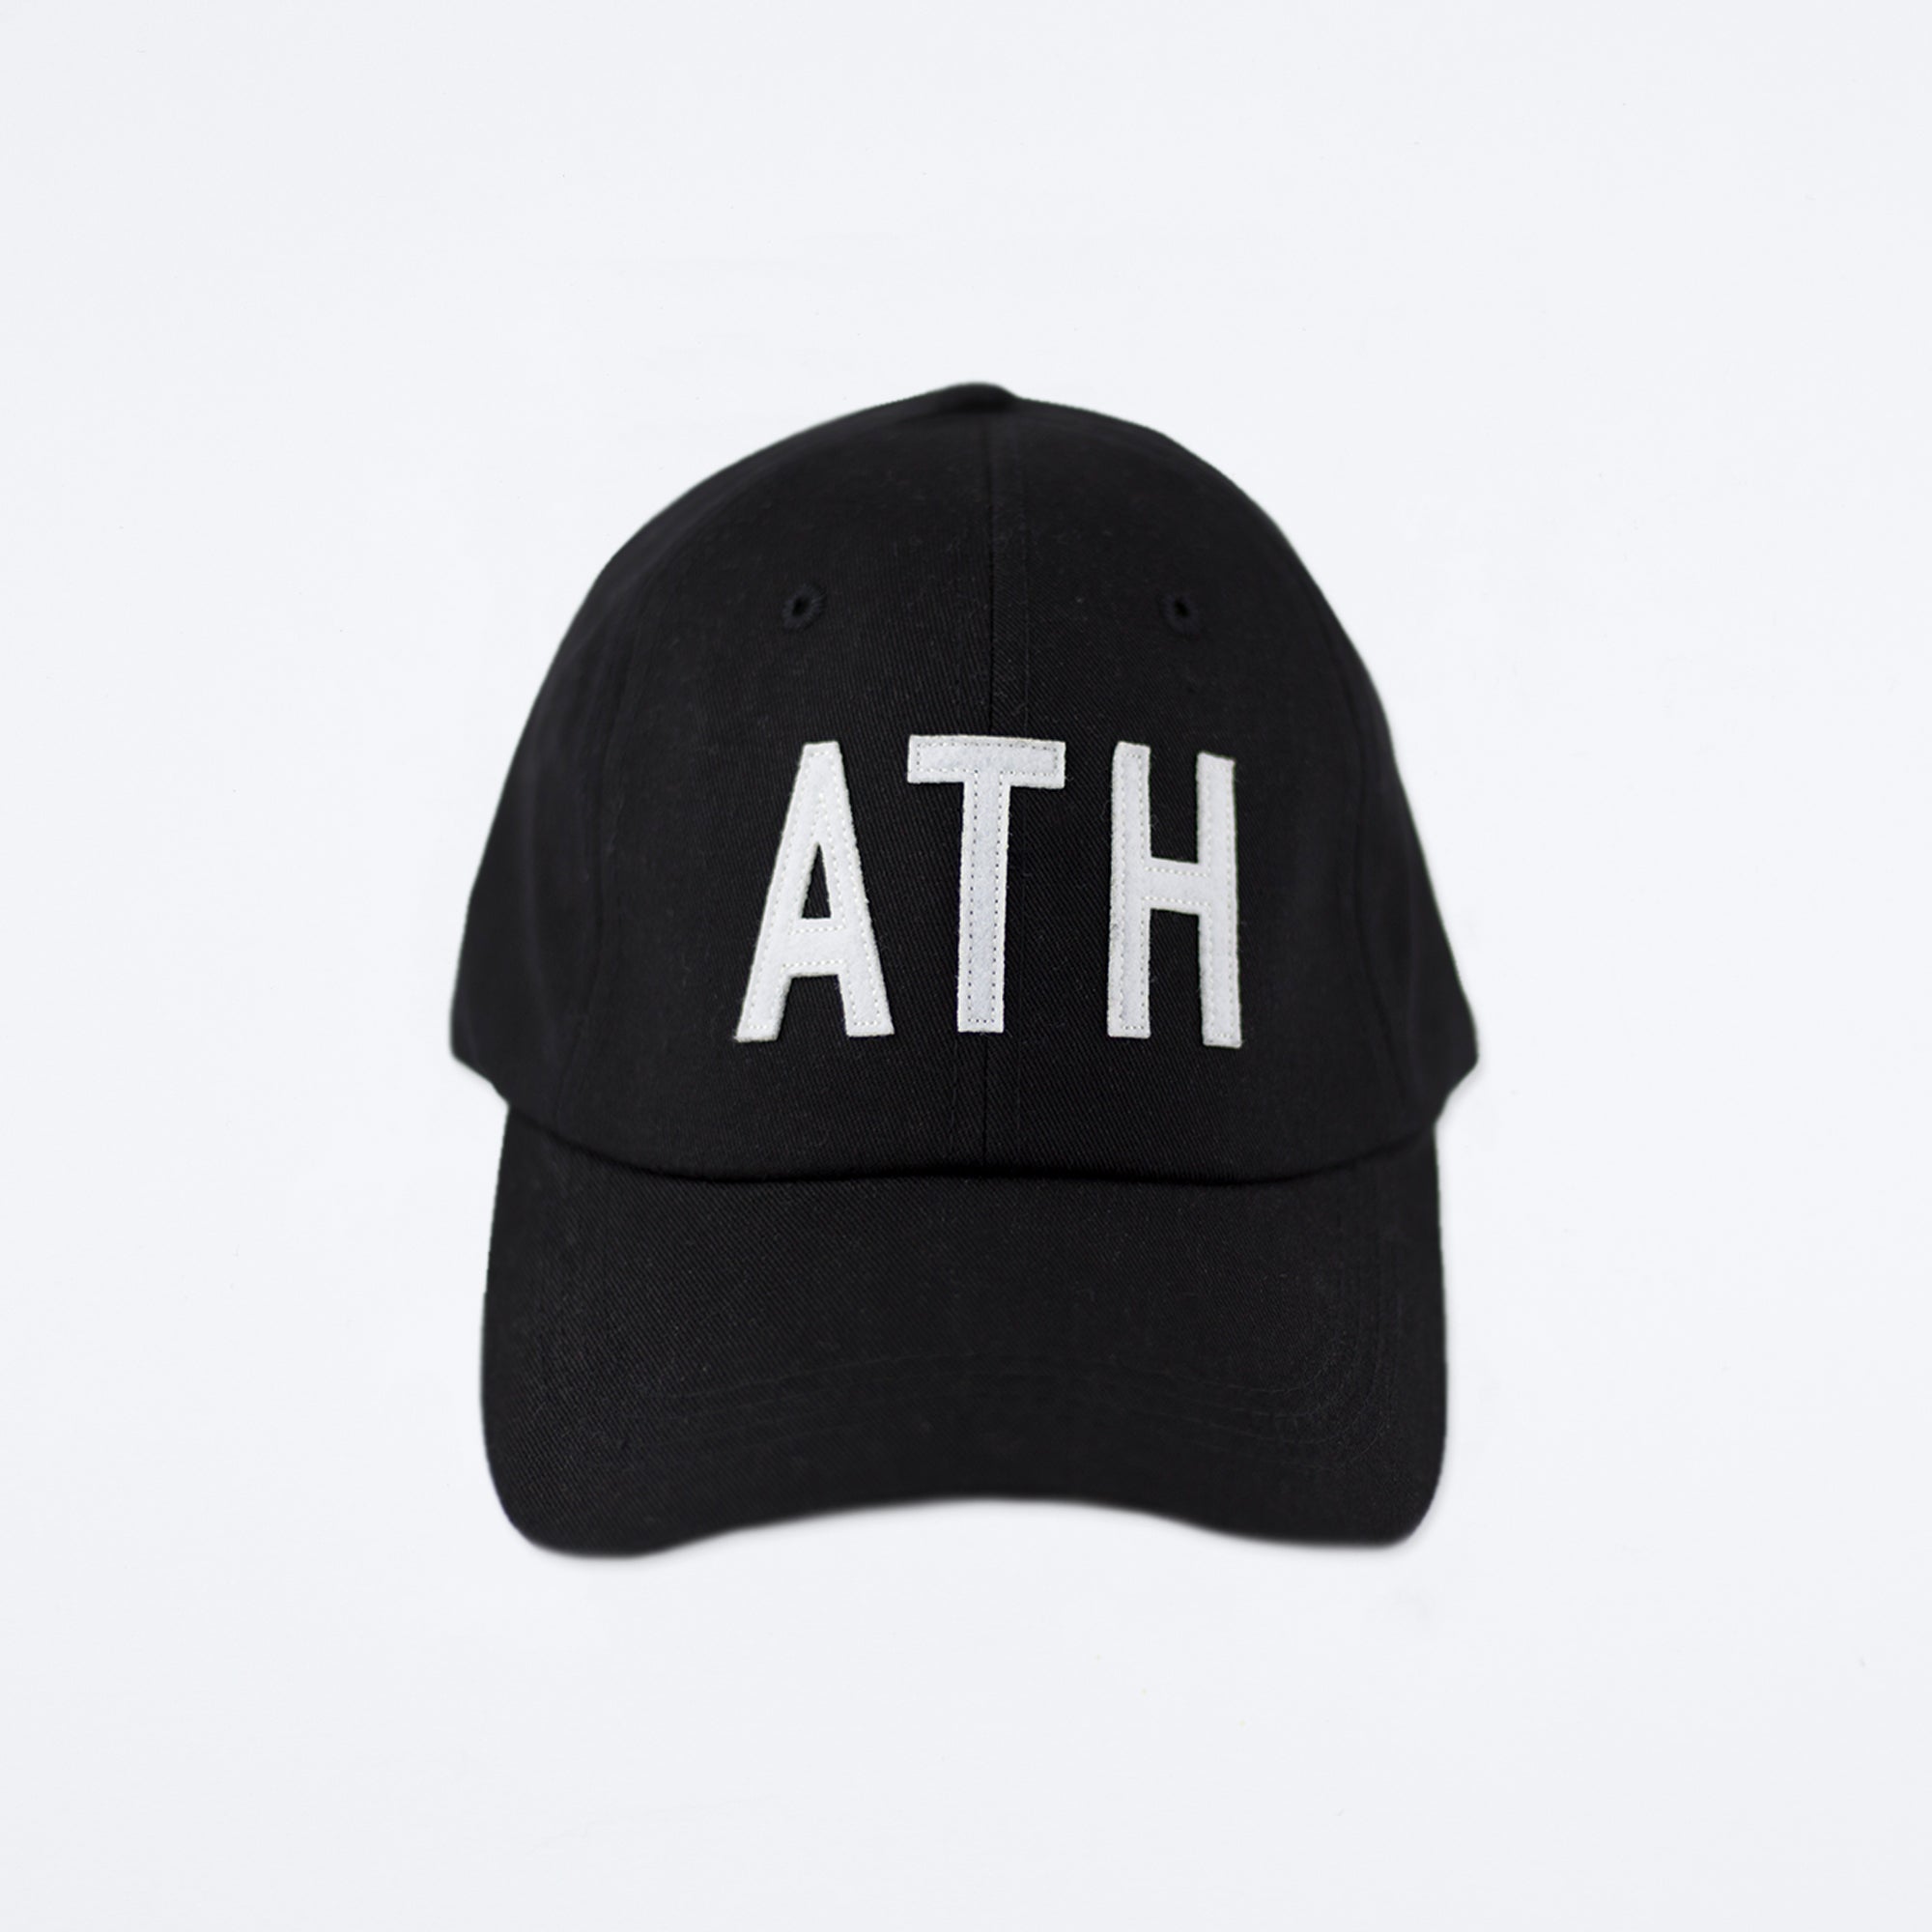 ATH Hat